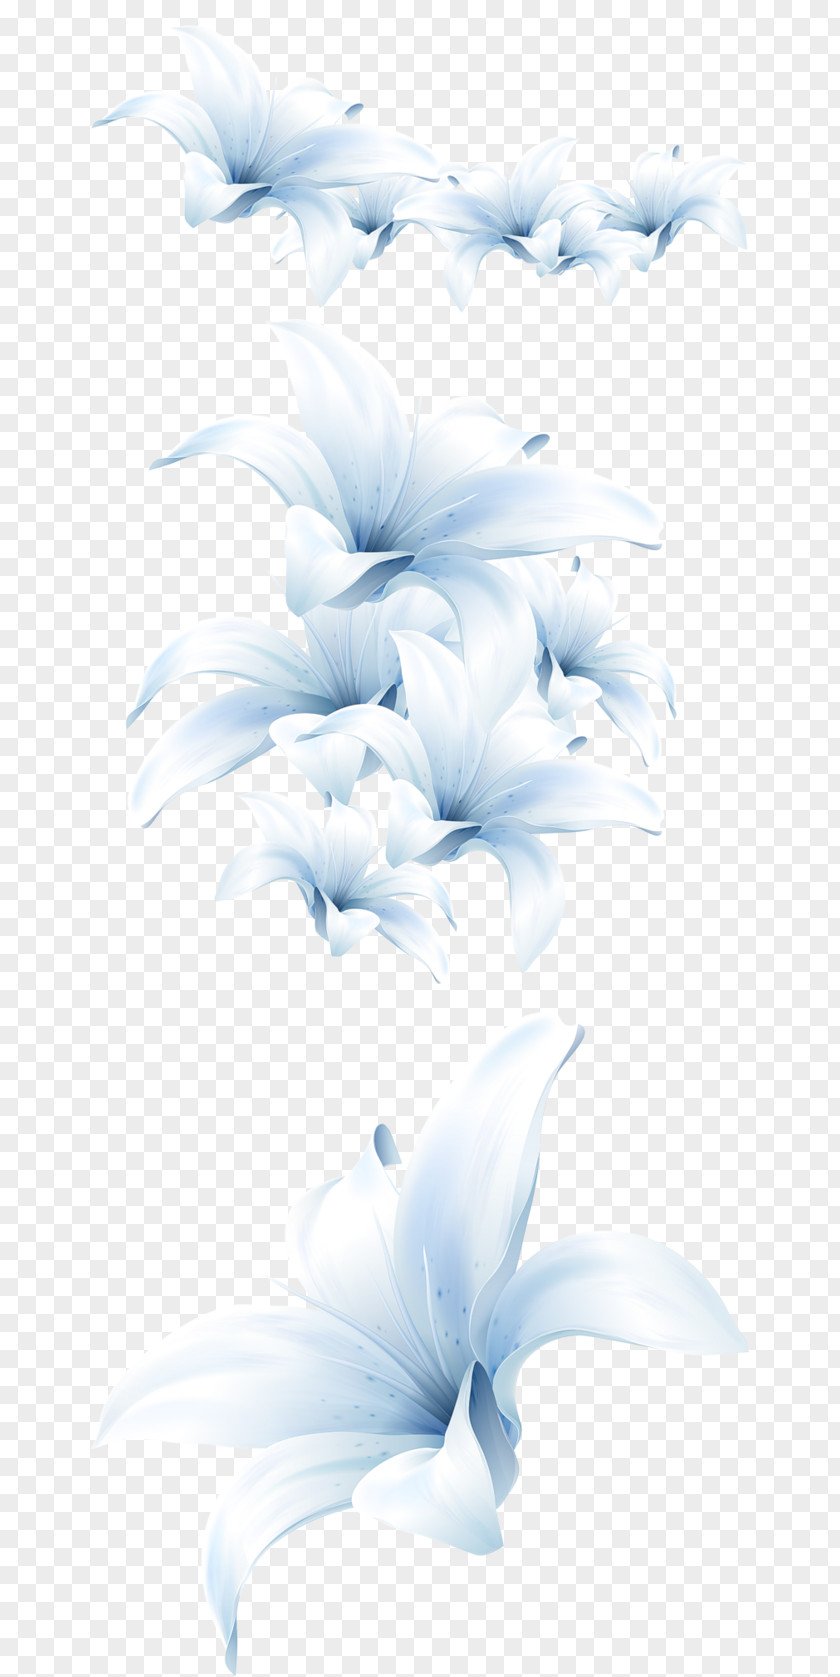 Flower Madonna Lily Petal Image PNG